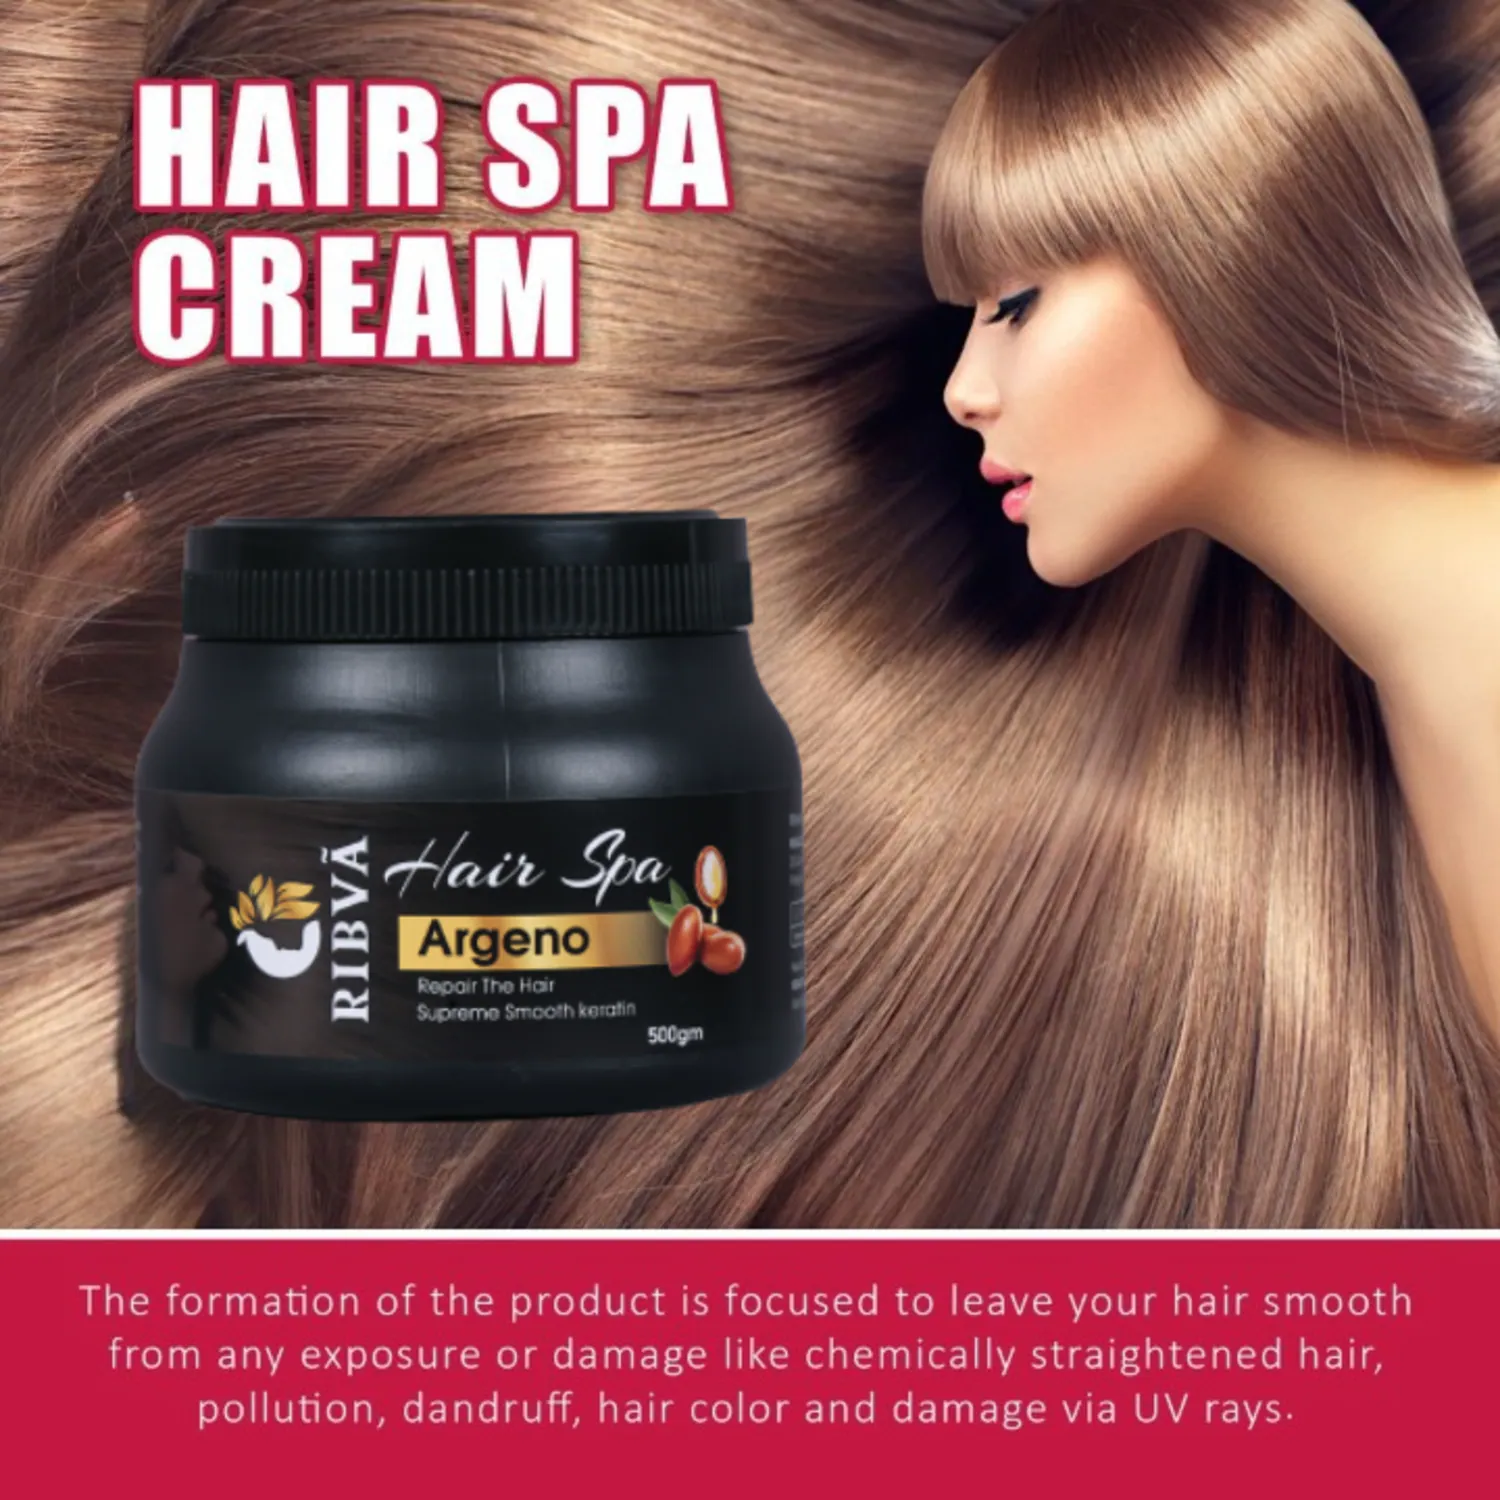 Professional Feel Ribva Hair Spa Treatment, Make Your Hair More Smooth,  (500gm) - JioMart